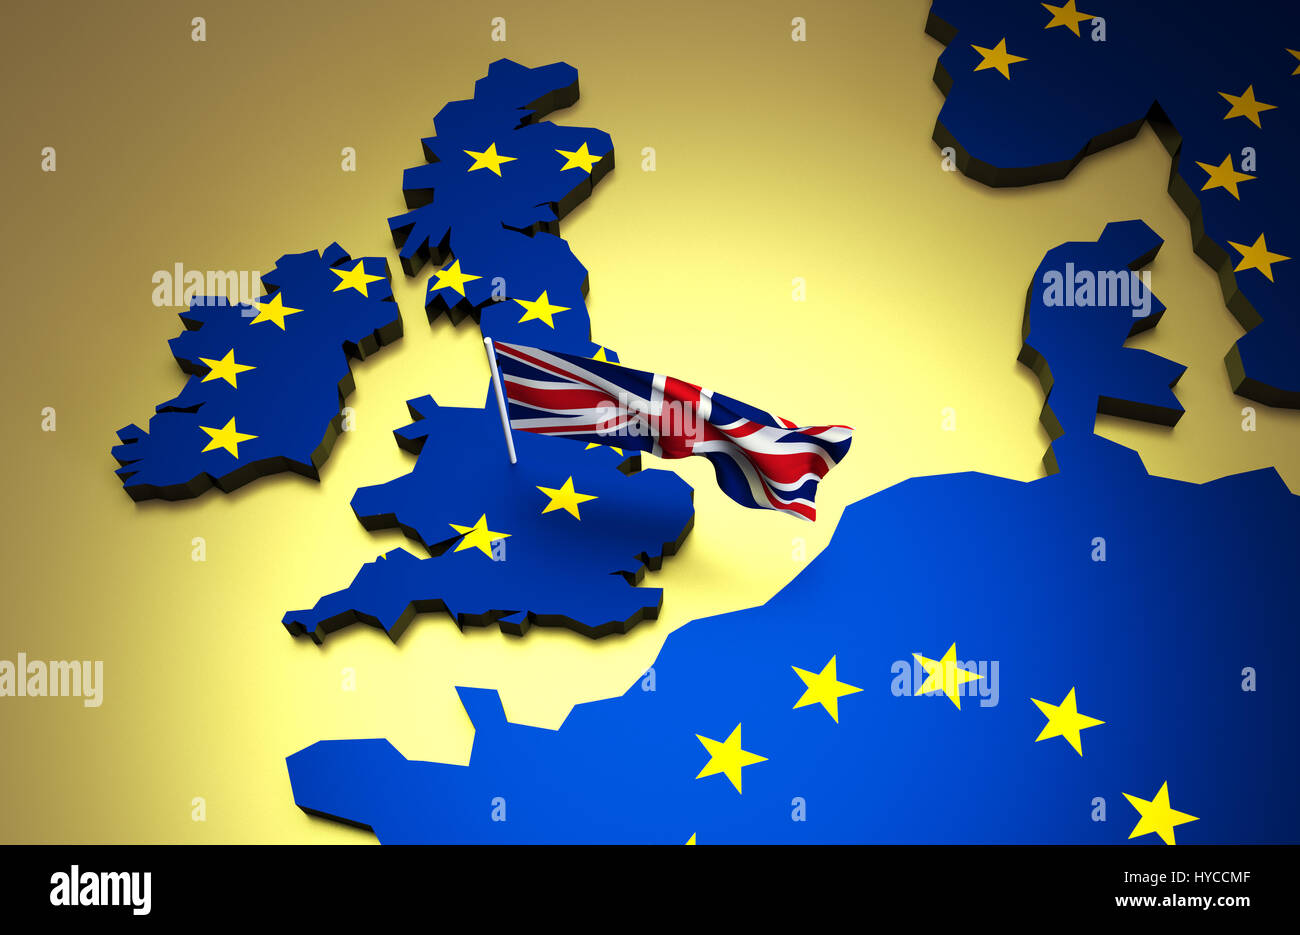 Regno Unito è ancora parte dell'Unione europea. Mappa di Europa con la bandiera britannica. No brexit. Foto Stock